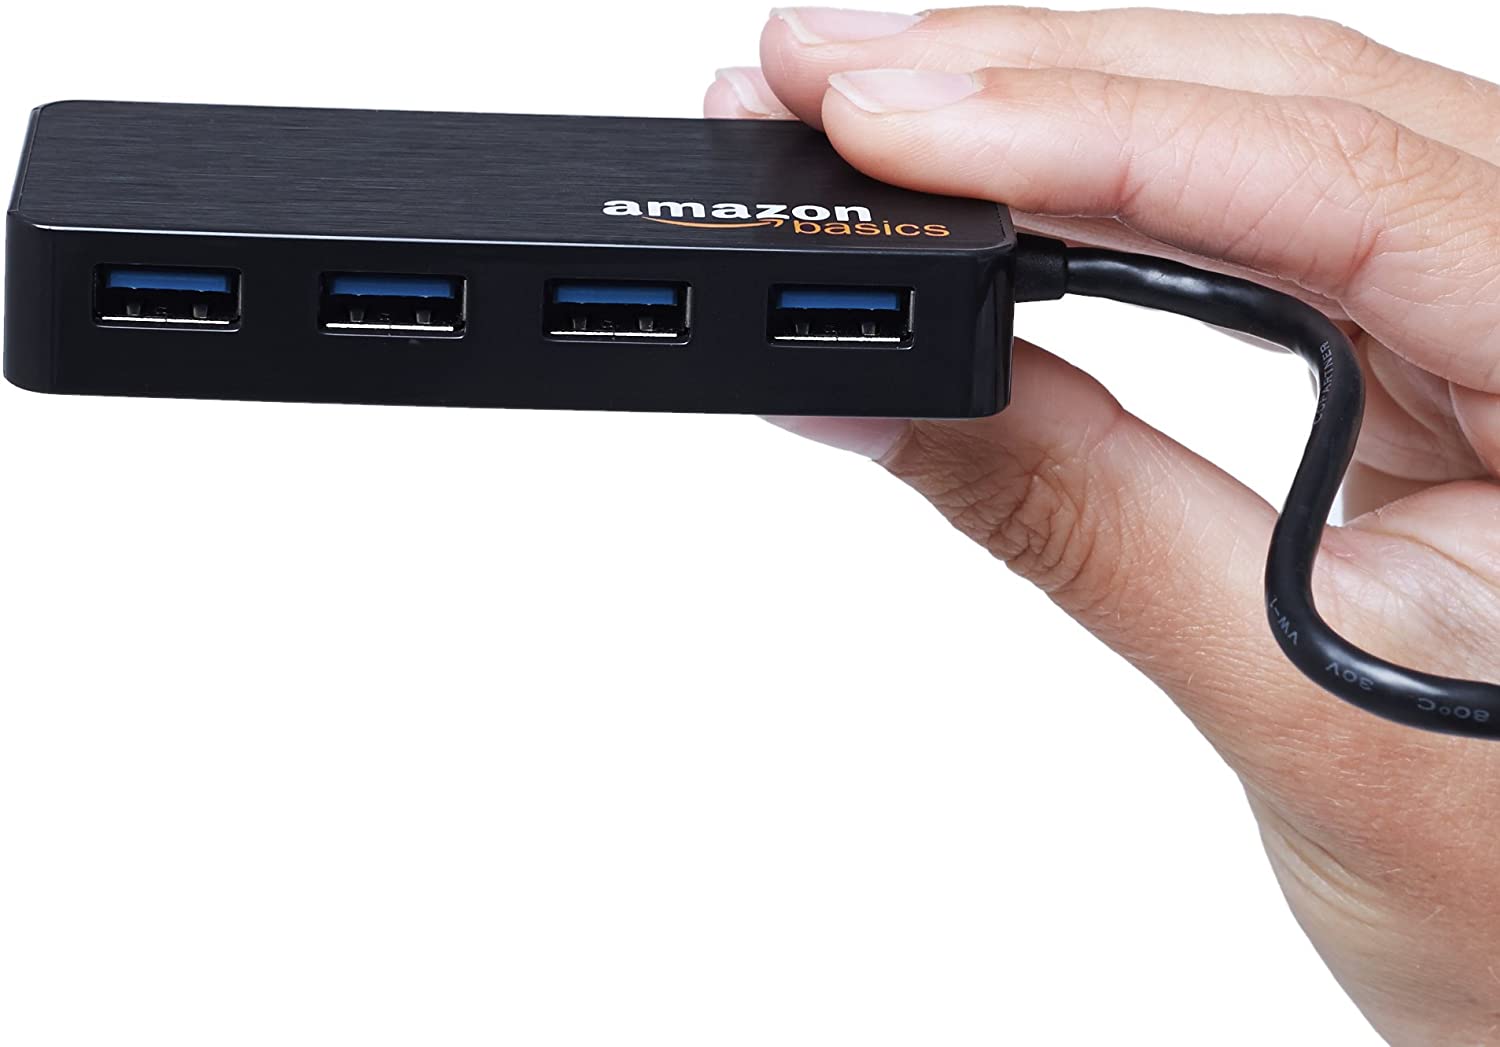 Amazon Basics USB to USB 3.0 Hub